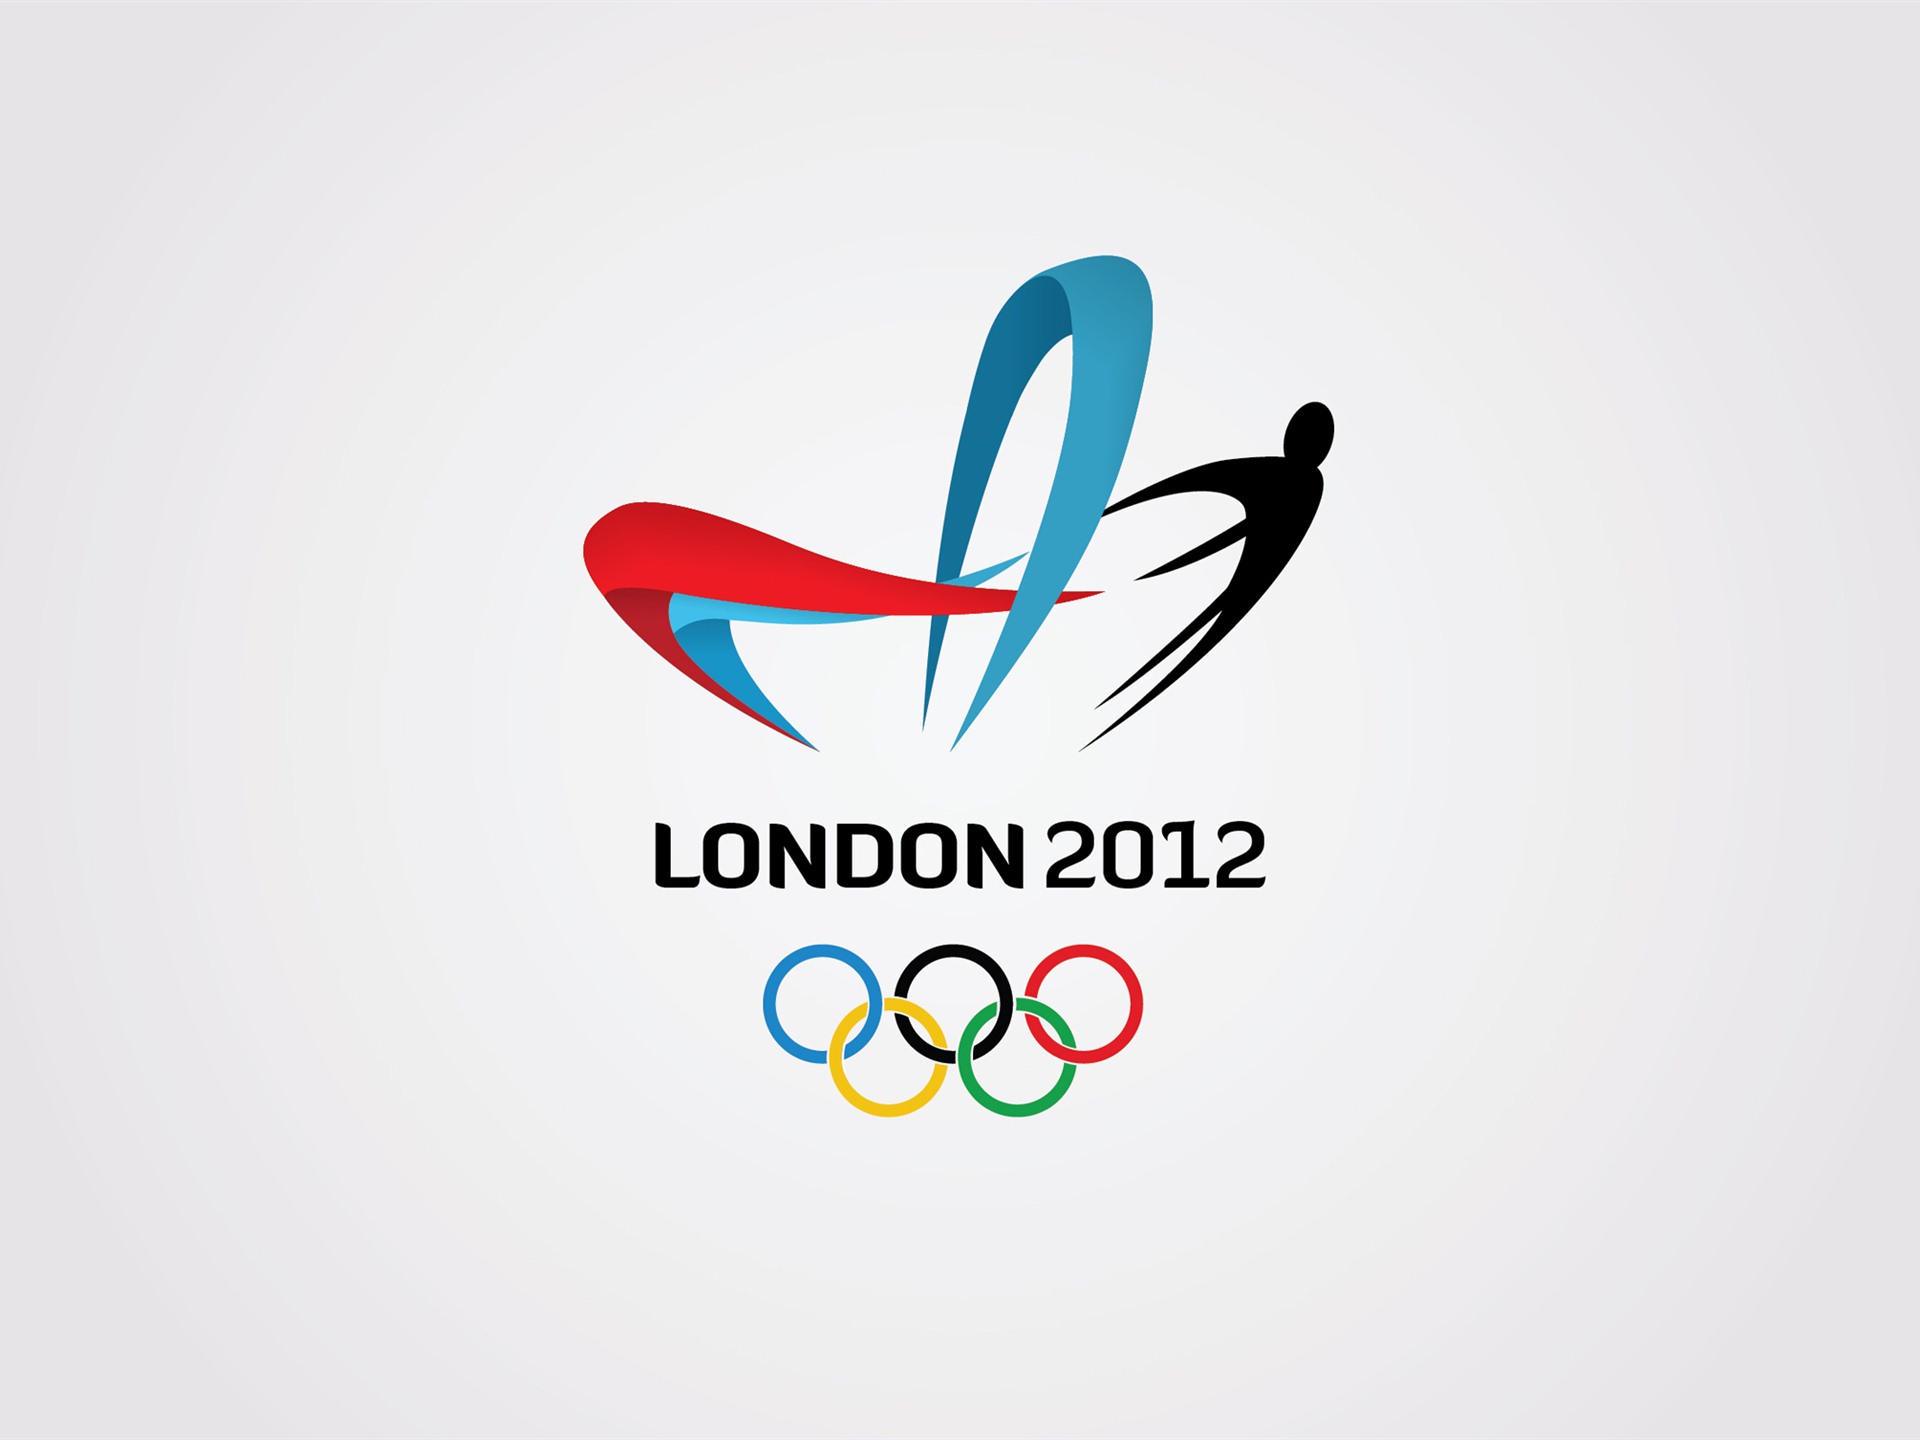 Londres 2012 Olimpiadas fondos temáticos (2) #25 - 1920x1440